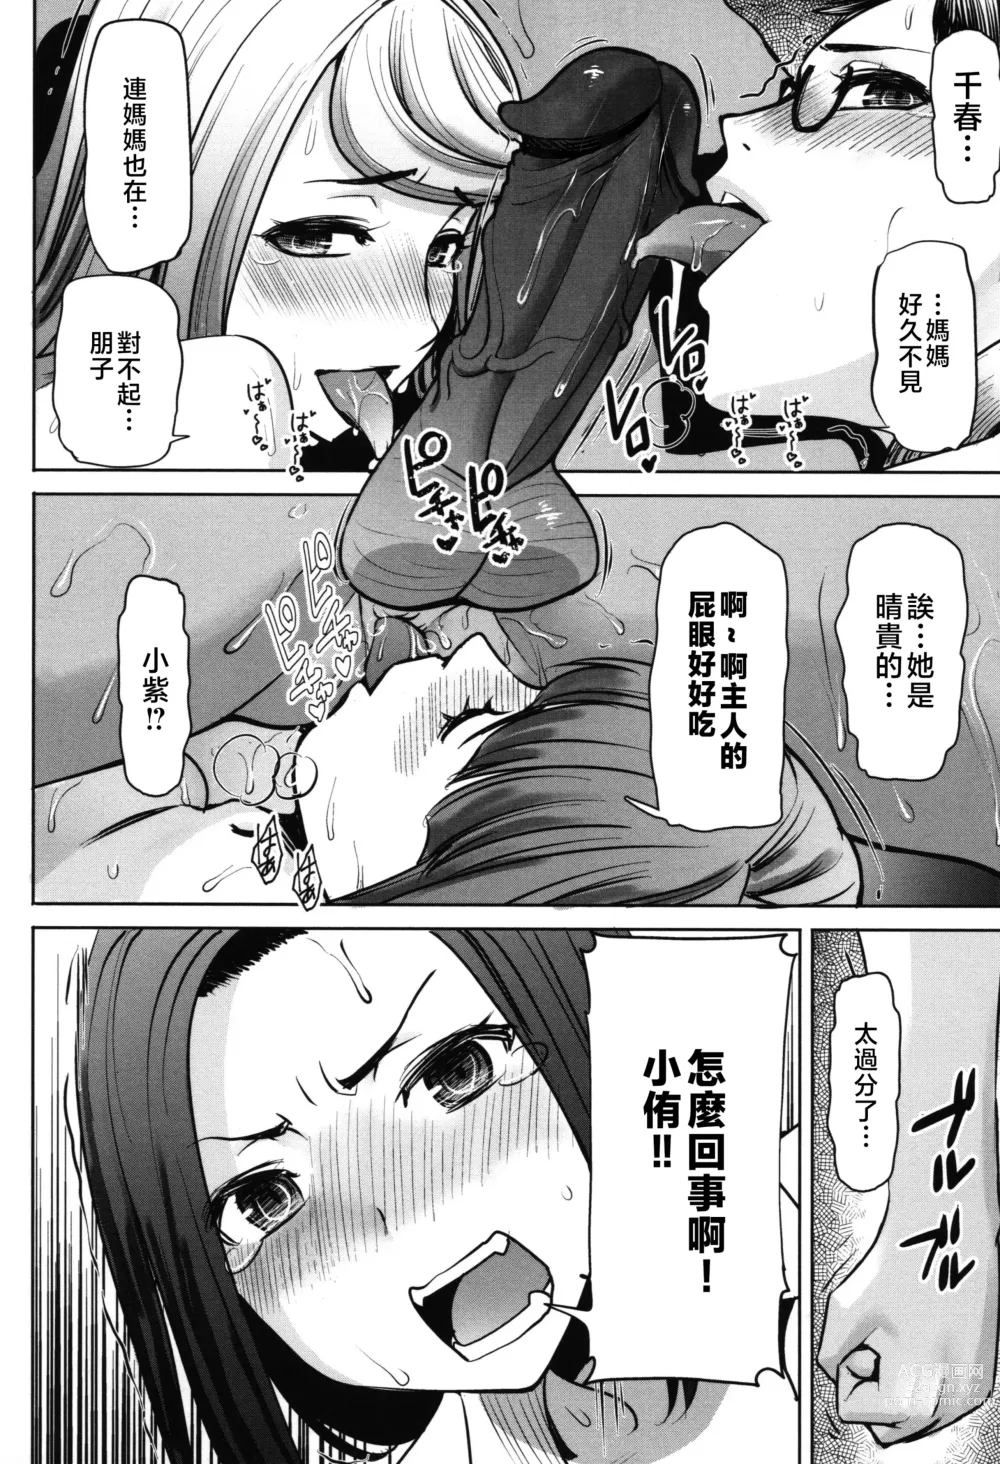 Page 184 of manga Unsweet - Asahina Ikka Netorareta Haha · Tomoko (decensored)